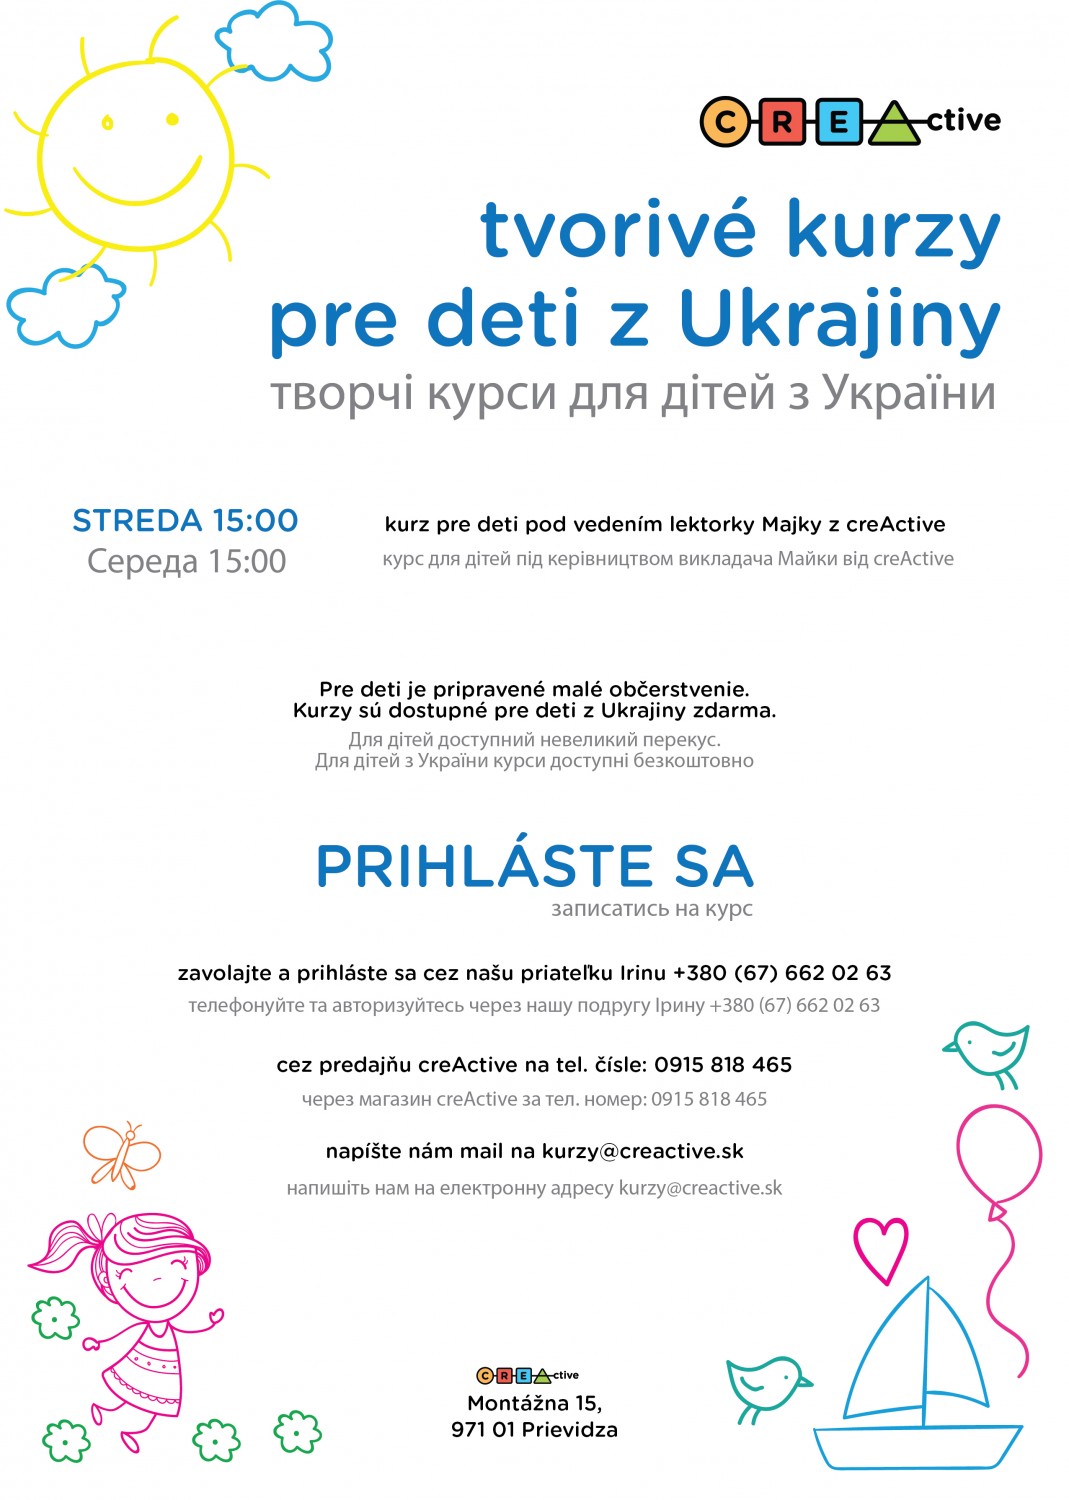 Plagát s informáciami o tvorivých kurzoch pre deti z Ukrajiny v creActive.